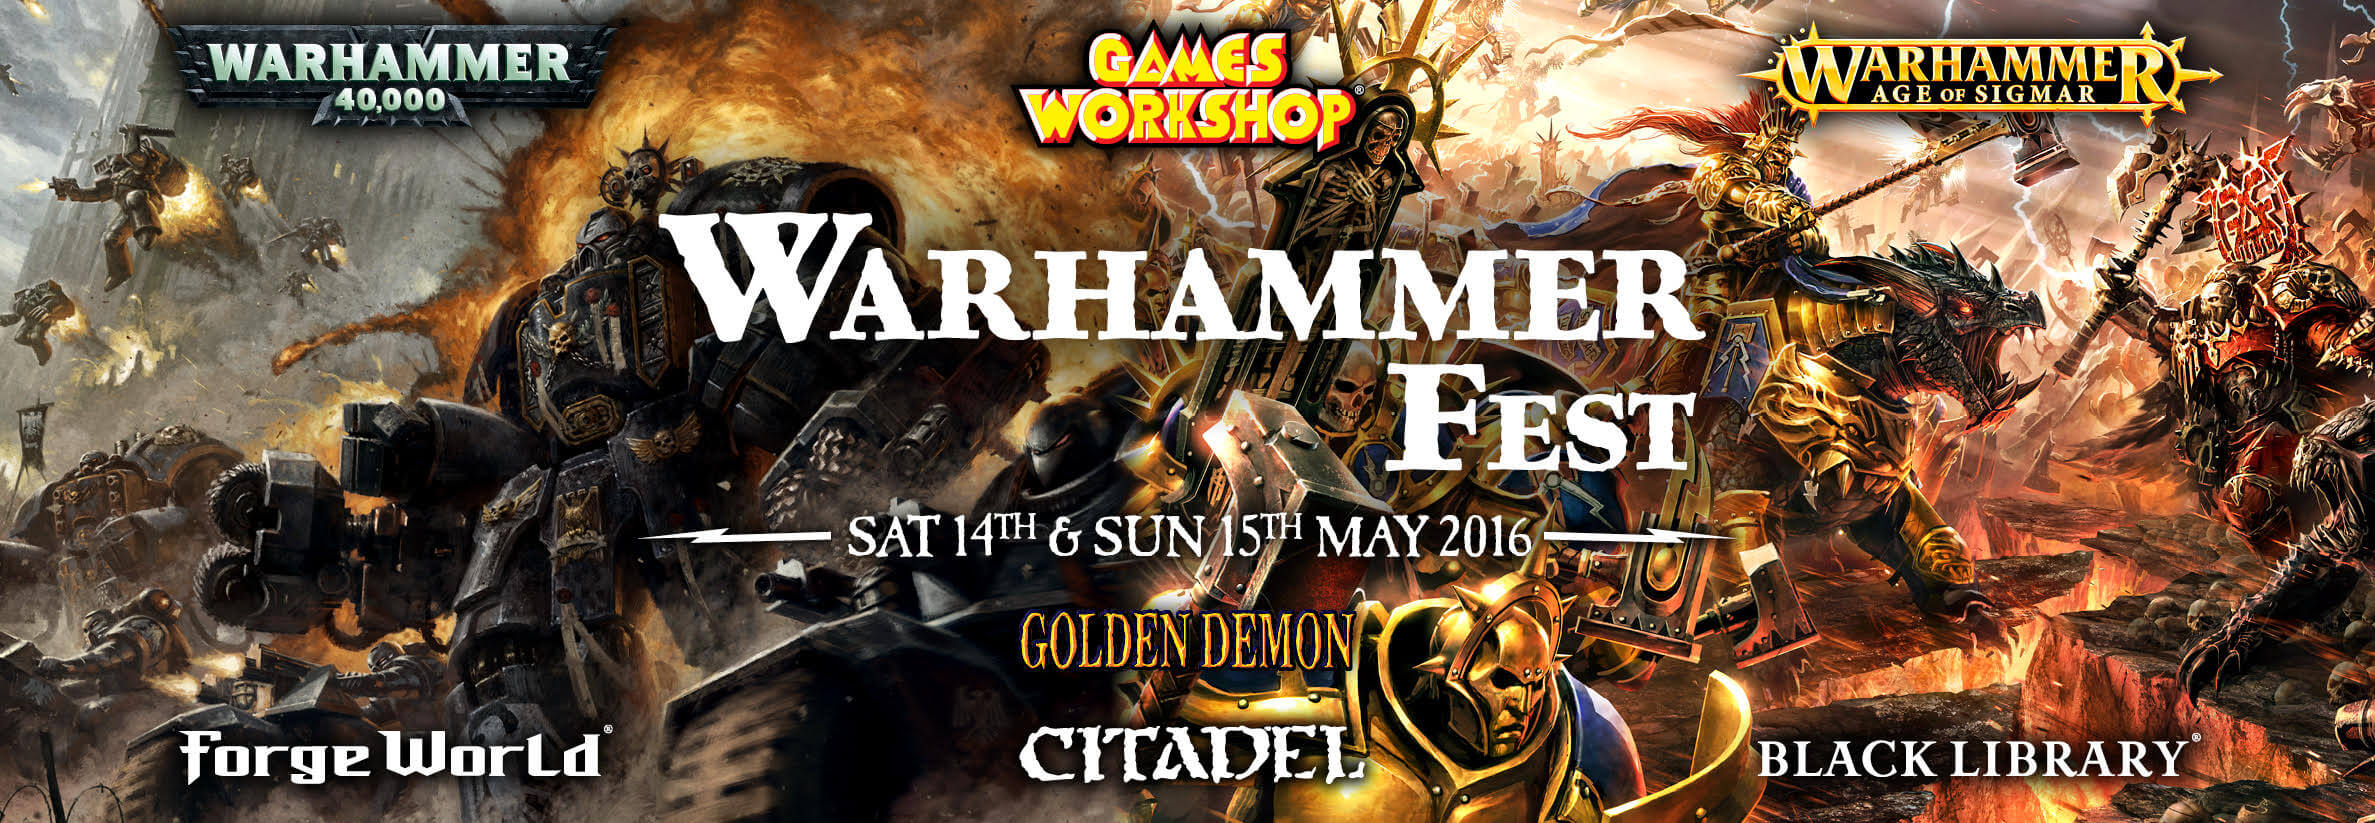 Warhammer Fest 2016